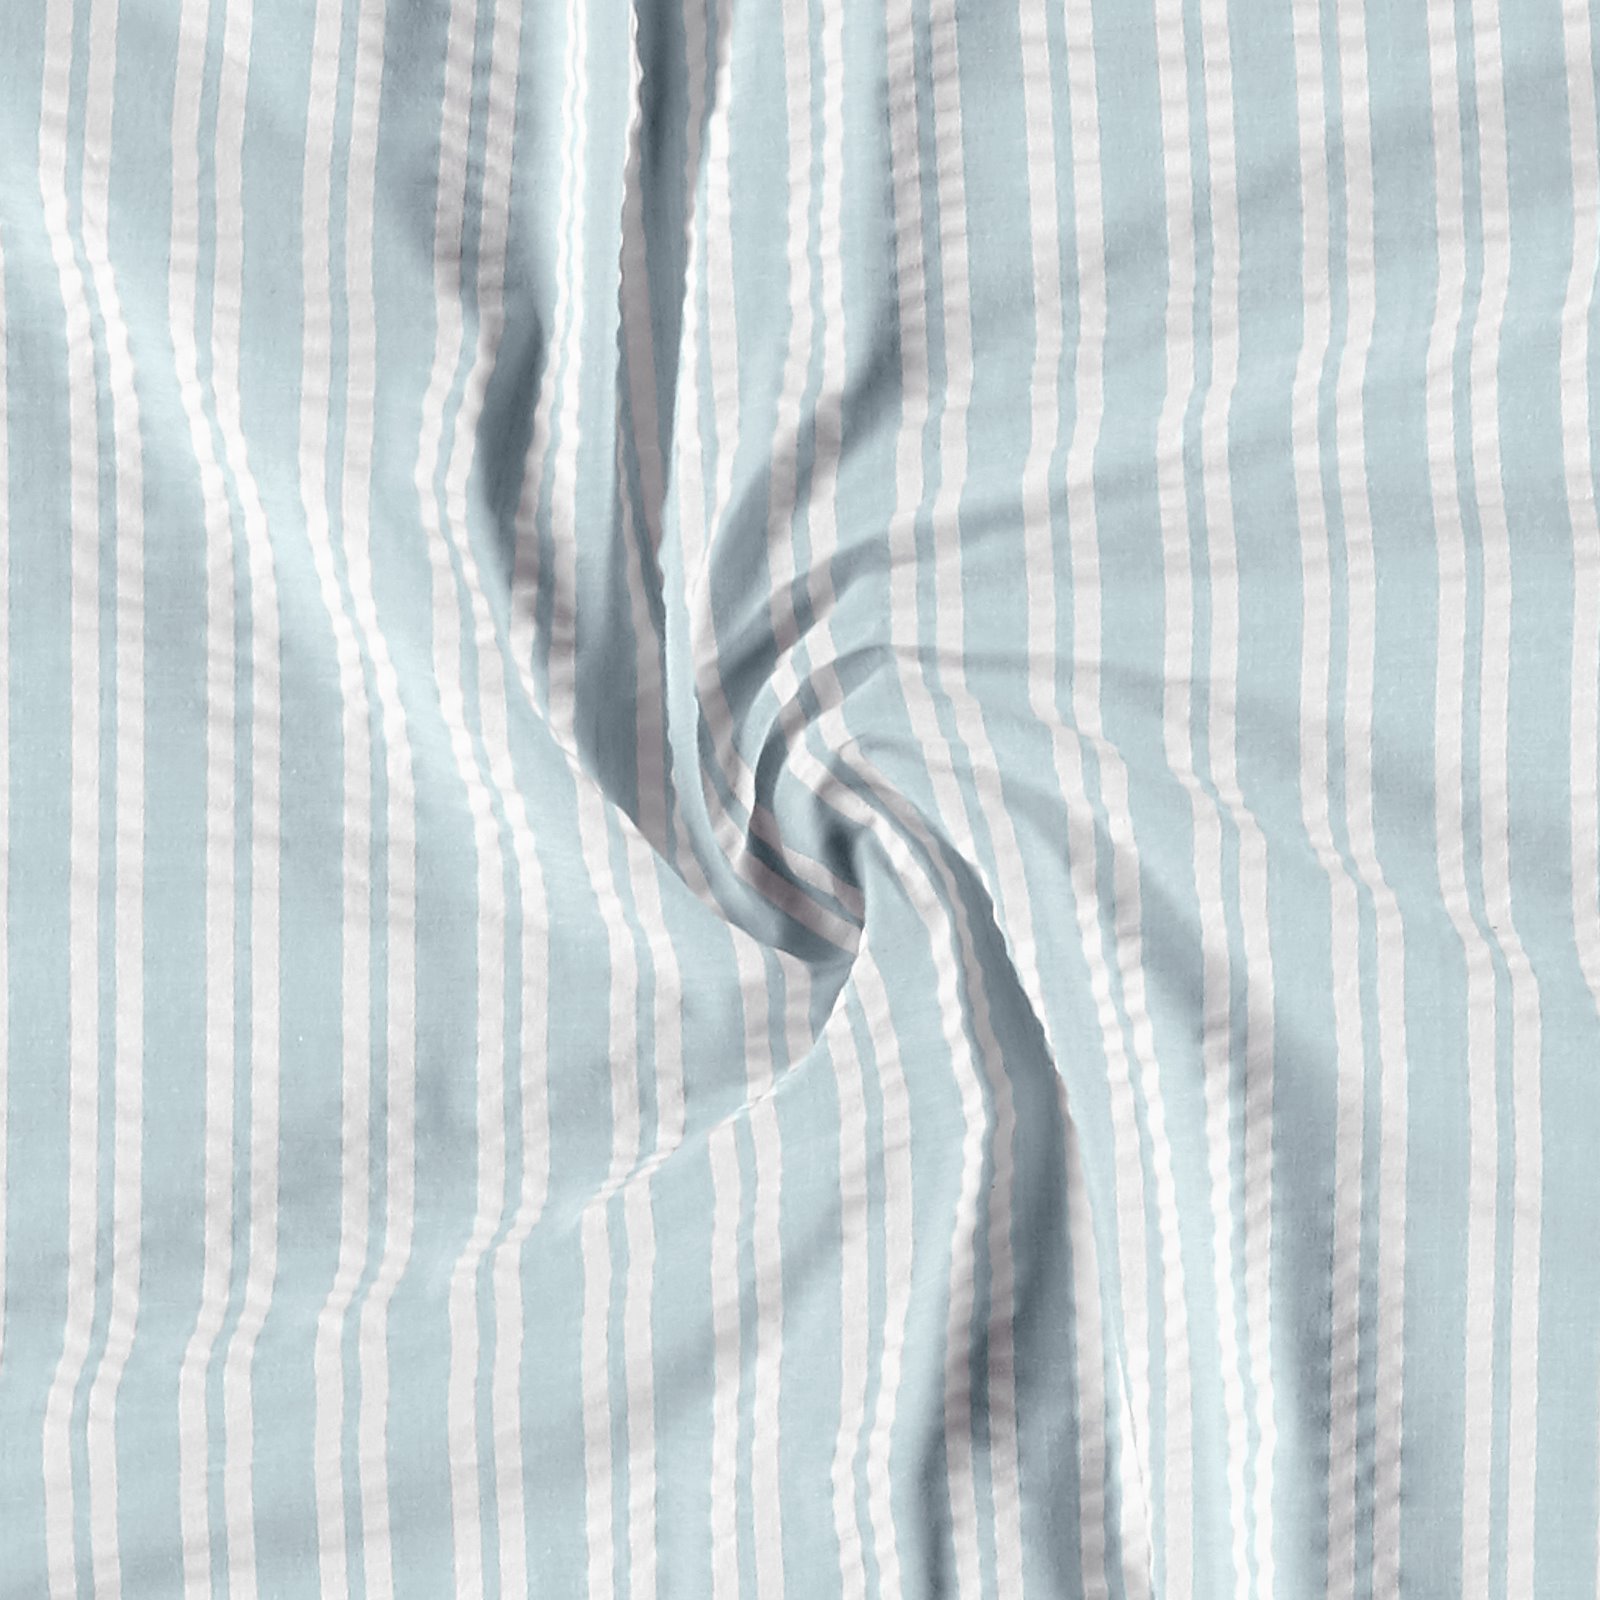 Striped Seersucker Cotton - Blue and White